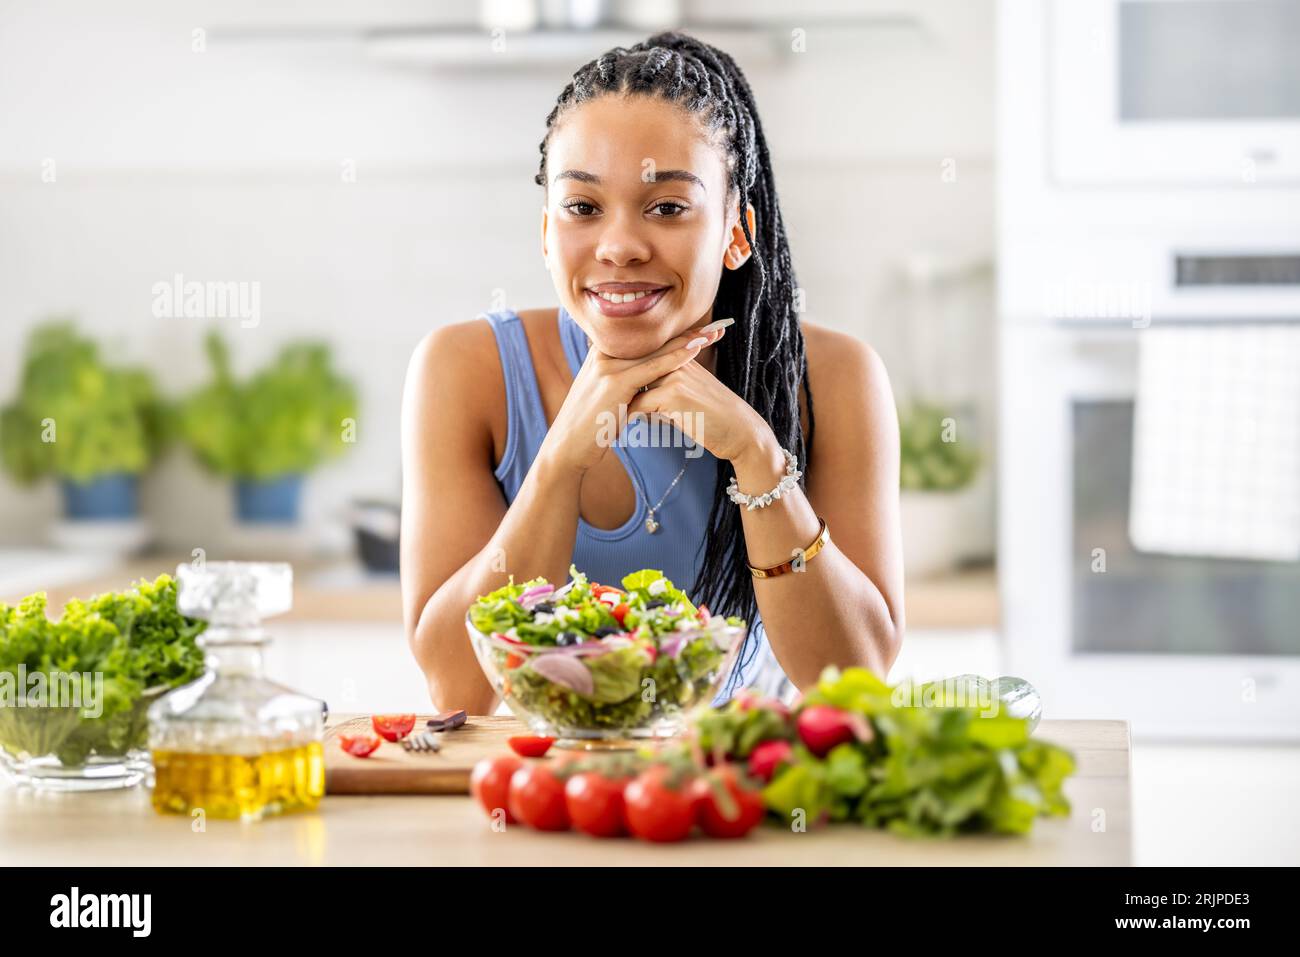 Una bella ragazza afro-americana ha preparato una sana insalata mista di verdure fresche. Foto Stock